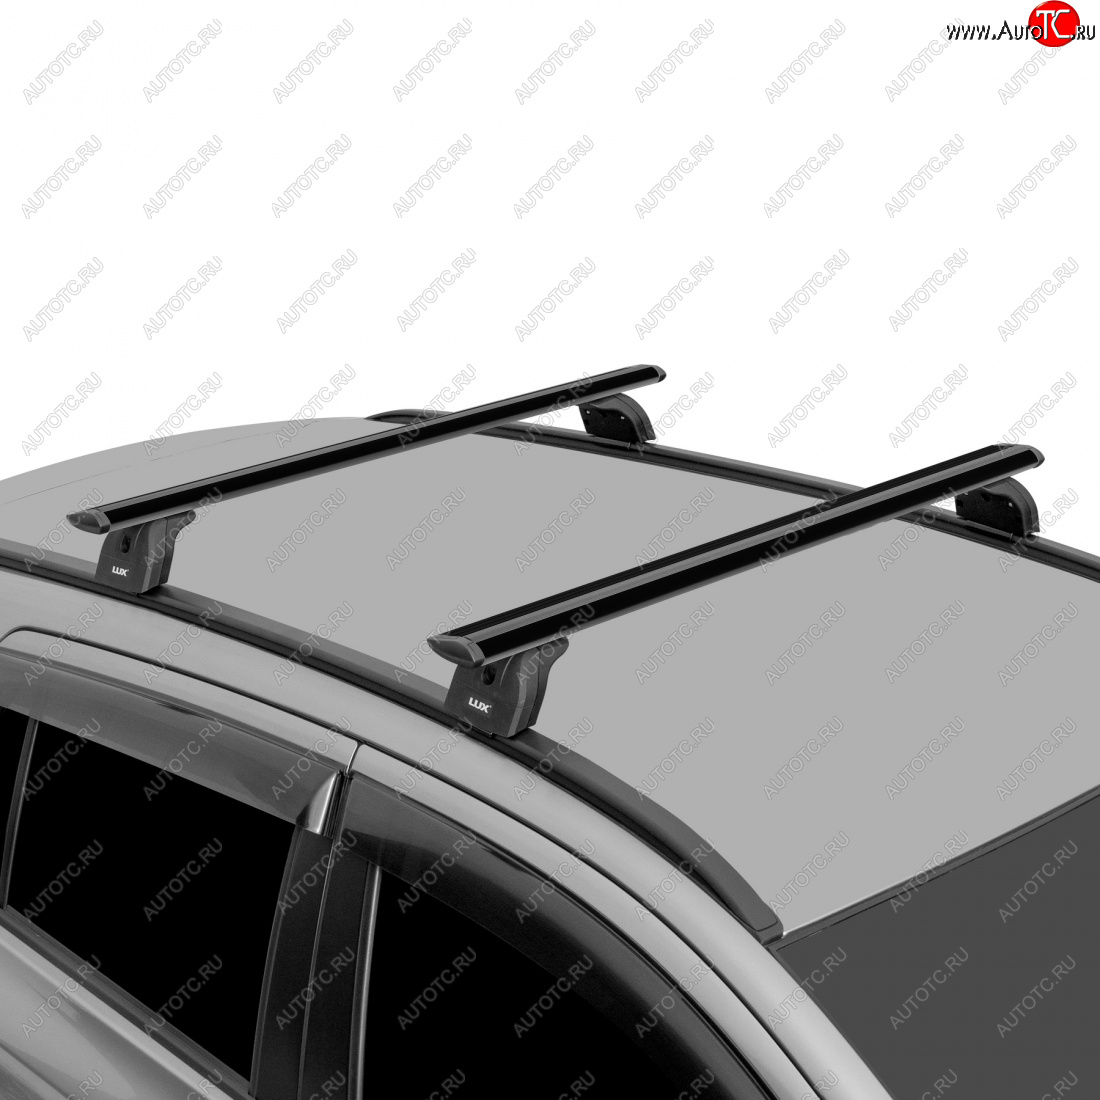 13 996 р. Багажник на крышу с низкими рейлингами сборе LUX  Volvo XC60 (2008-2017) (дуги аэро-трэвэл 120 см, с замком, черный)